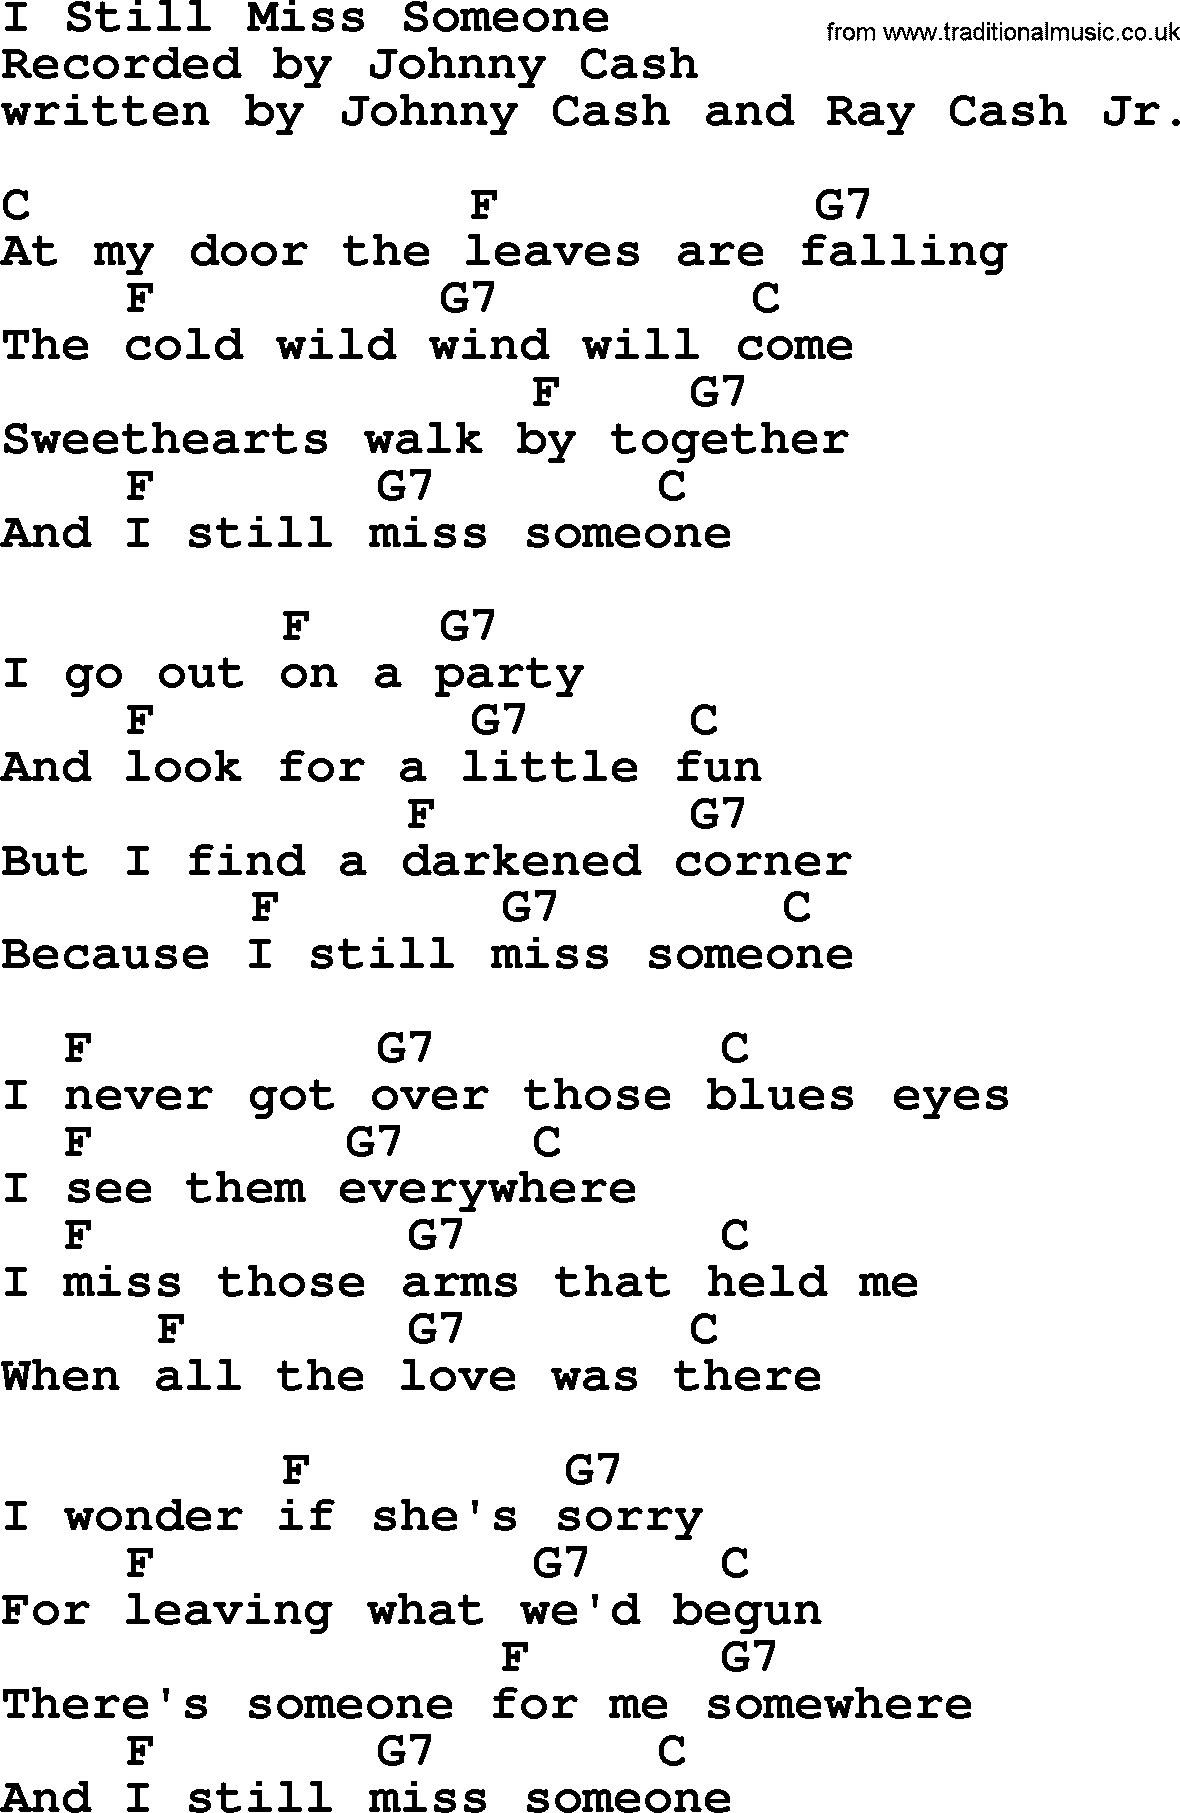 Johnny Cash song I Still Miss Someone, lyrics and chords